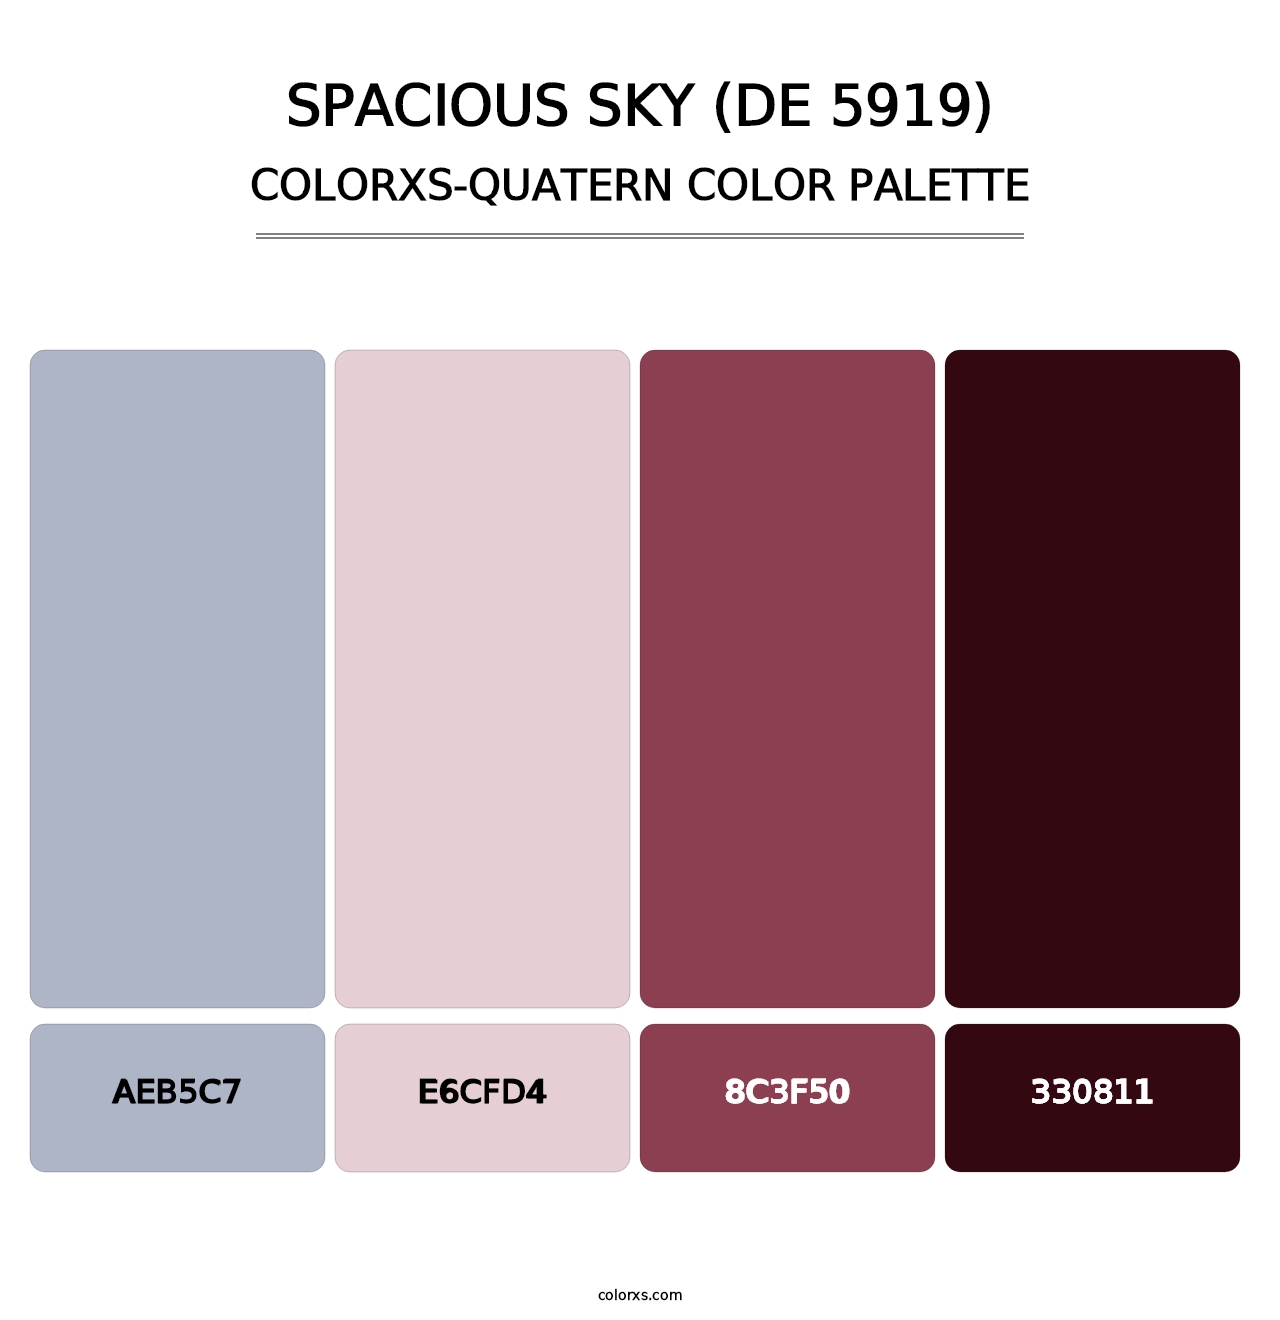 Spacious Sky (DE 5919) - Colorxs Quatern Palette